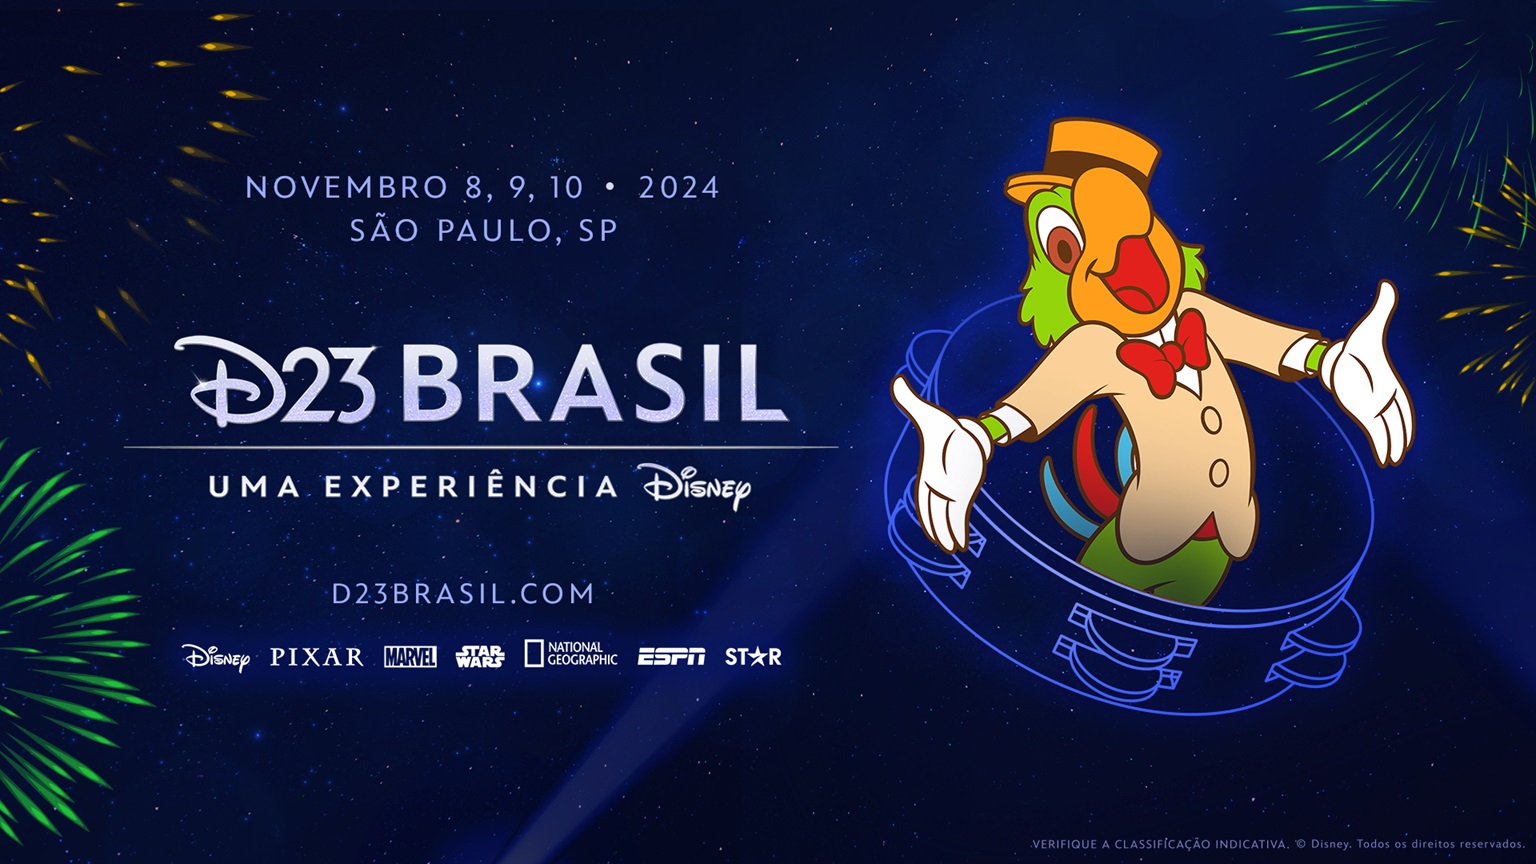 Disney revela data de venda de ingressos para D23 Brasil